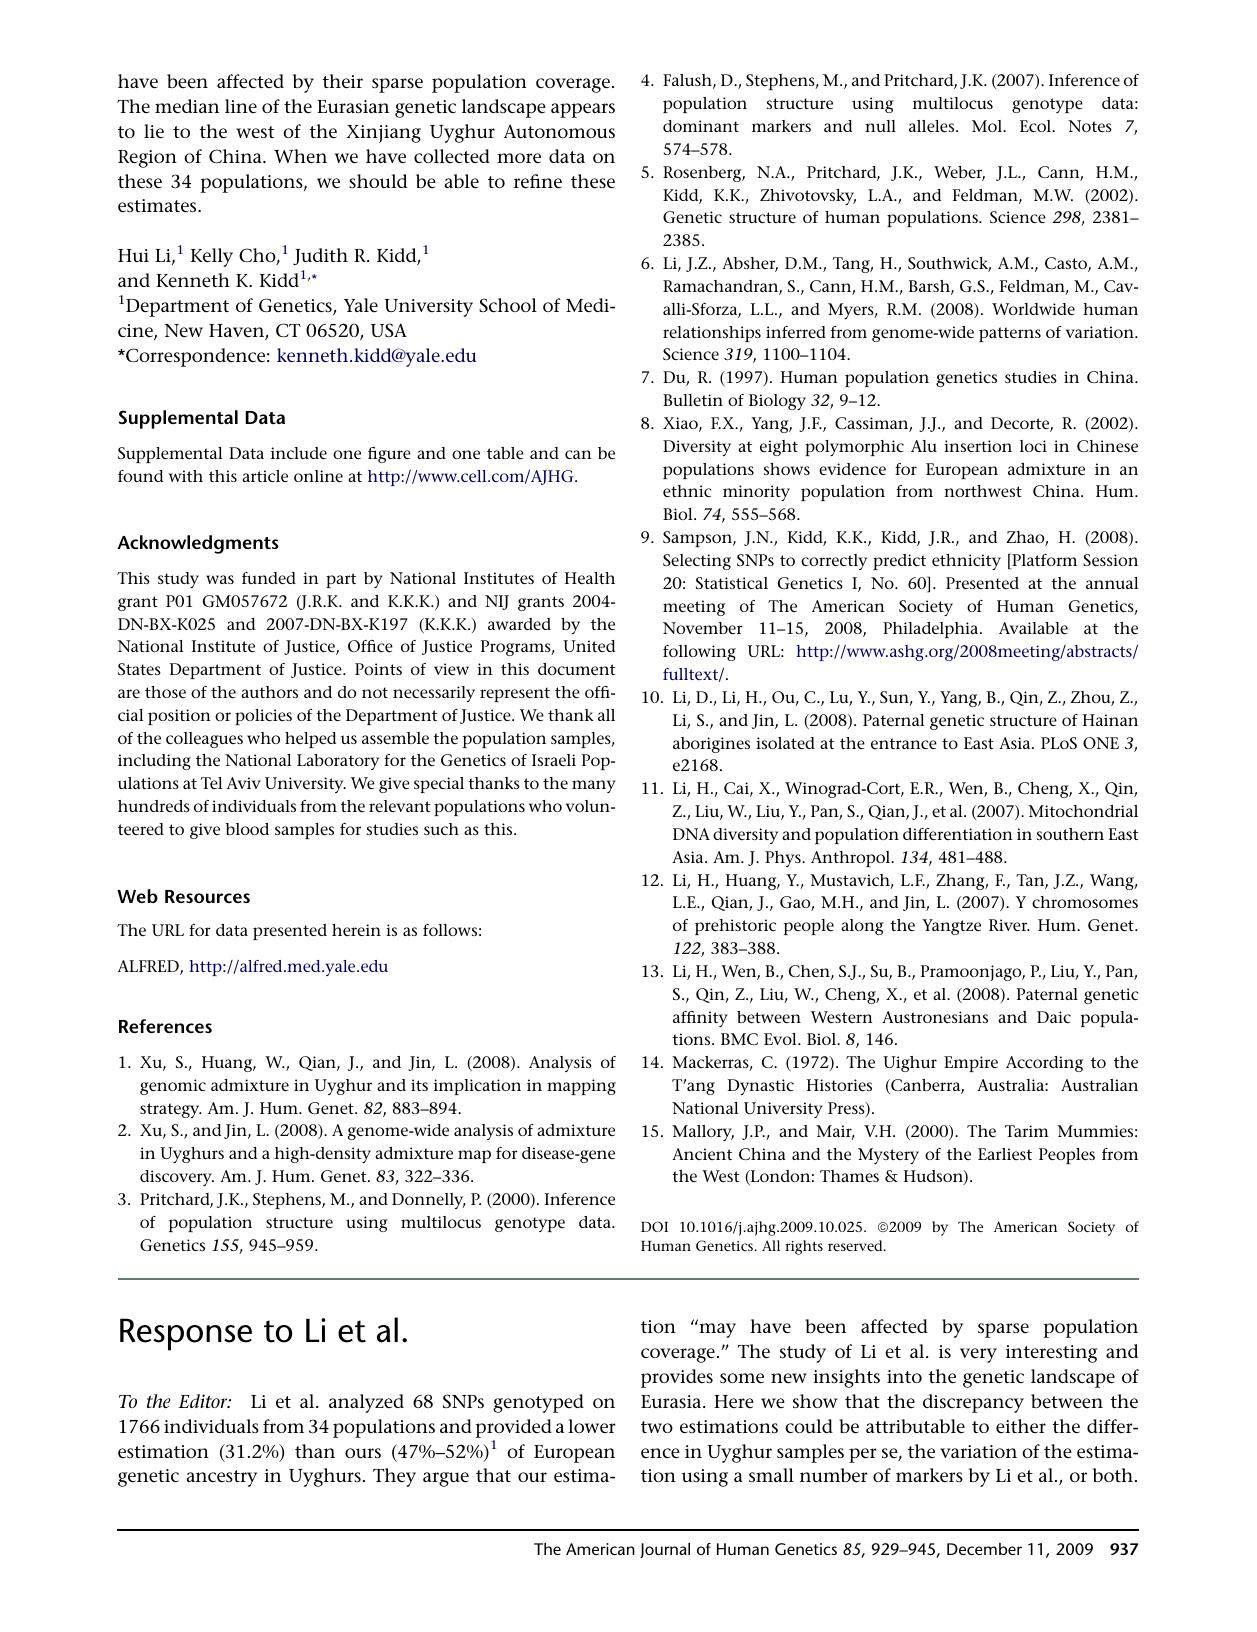 Response to Li et&nbsp;al. by Shuhua Xu; Li Jin